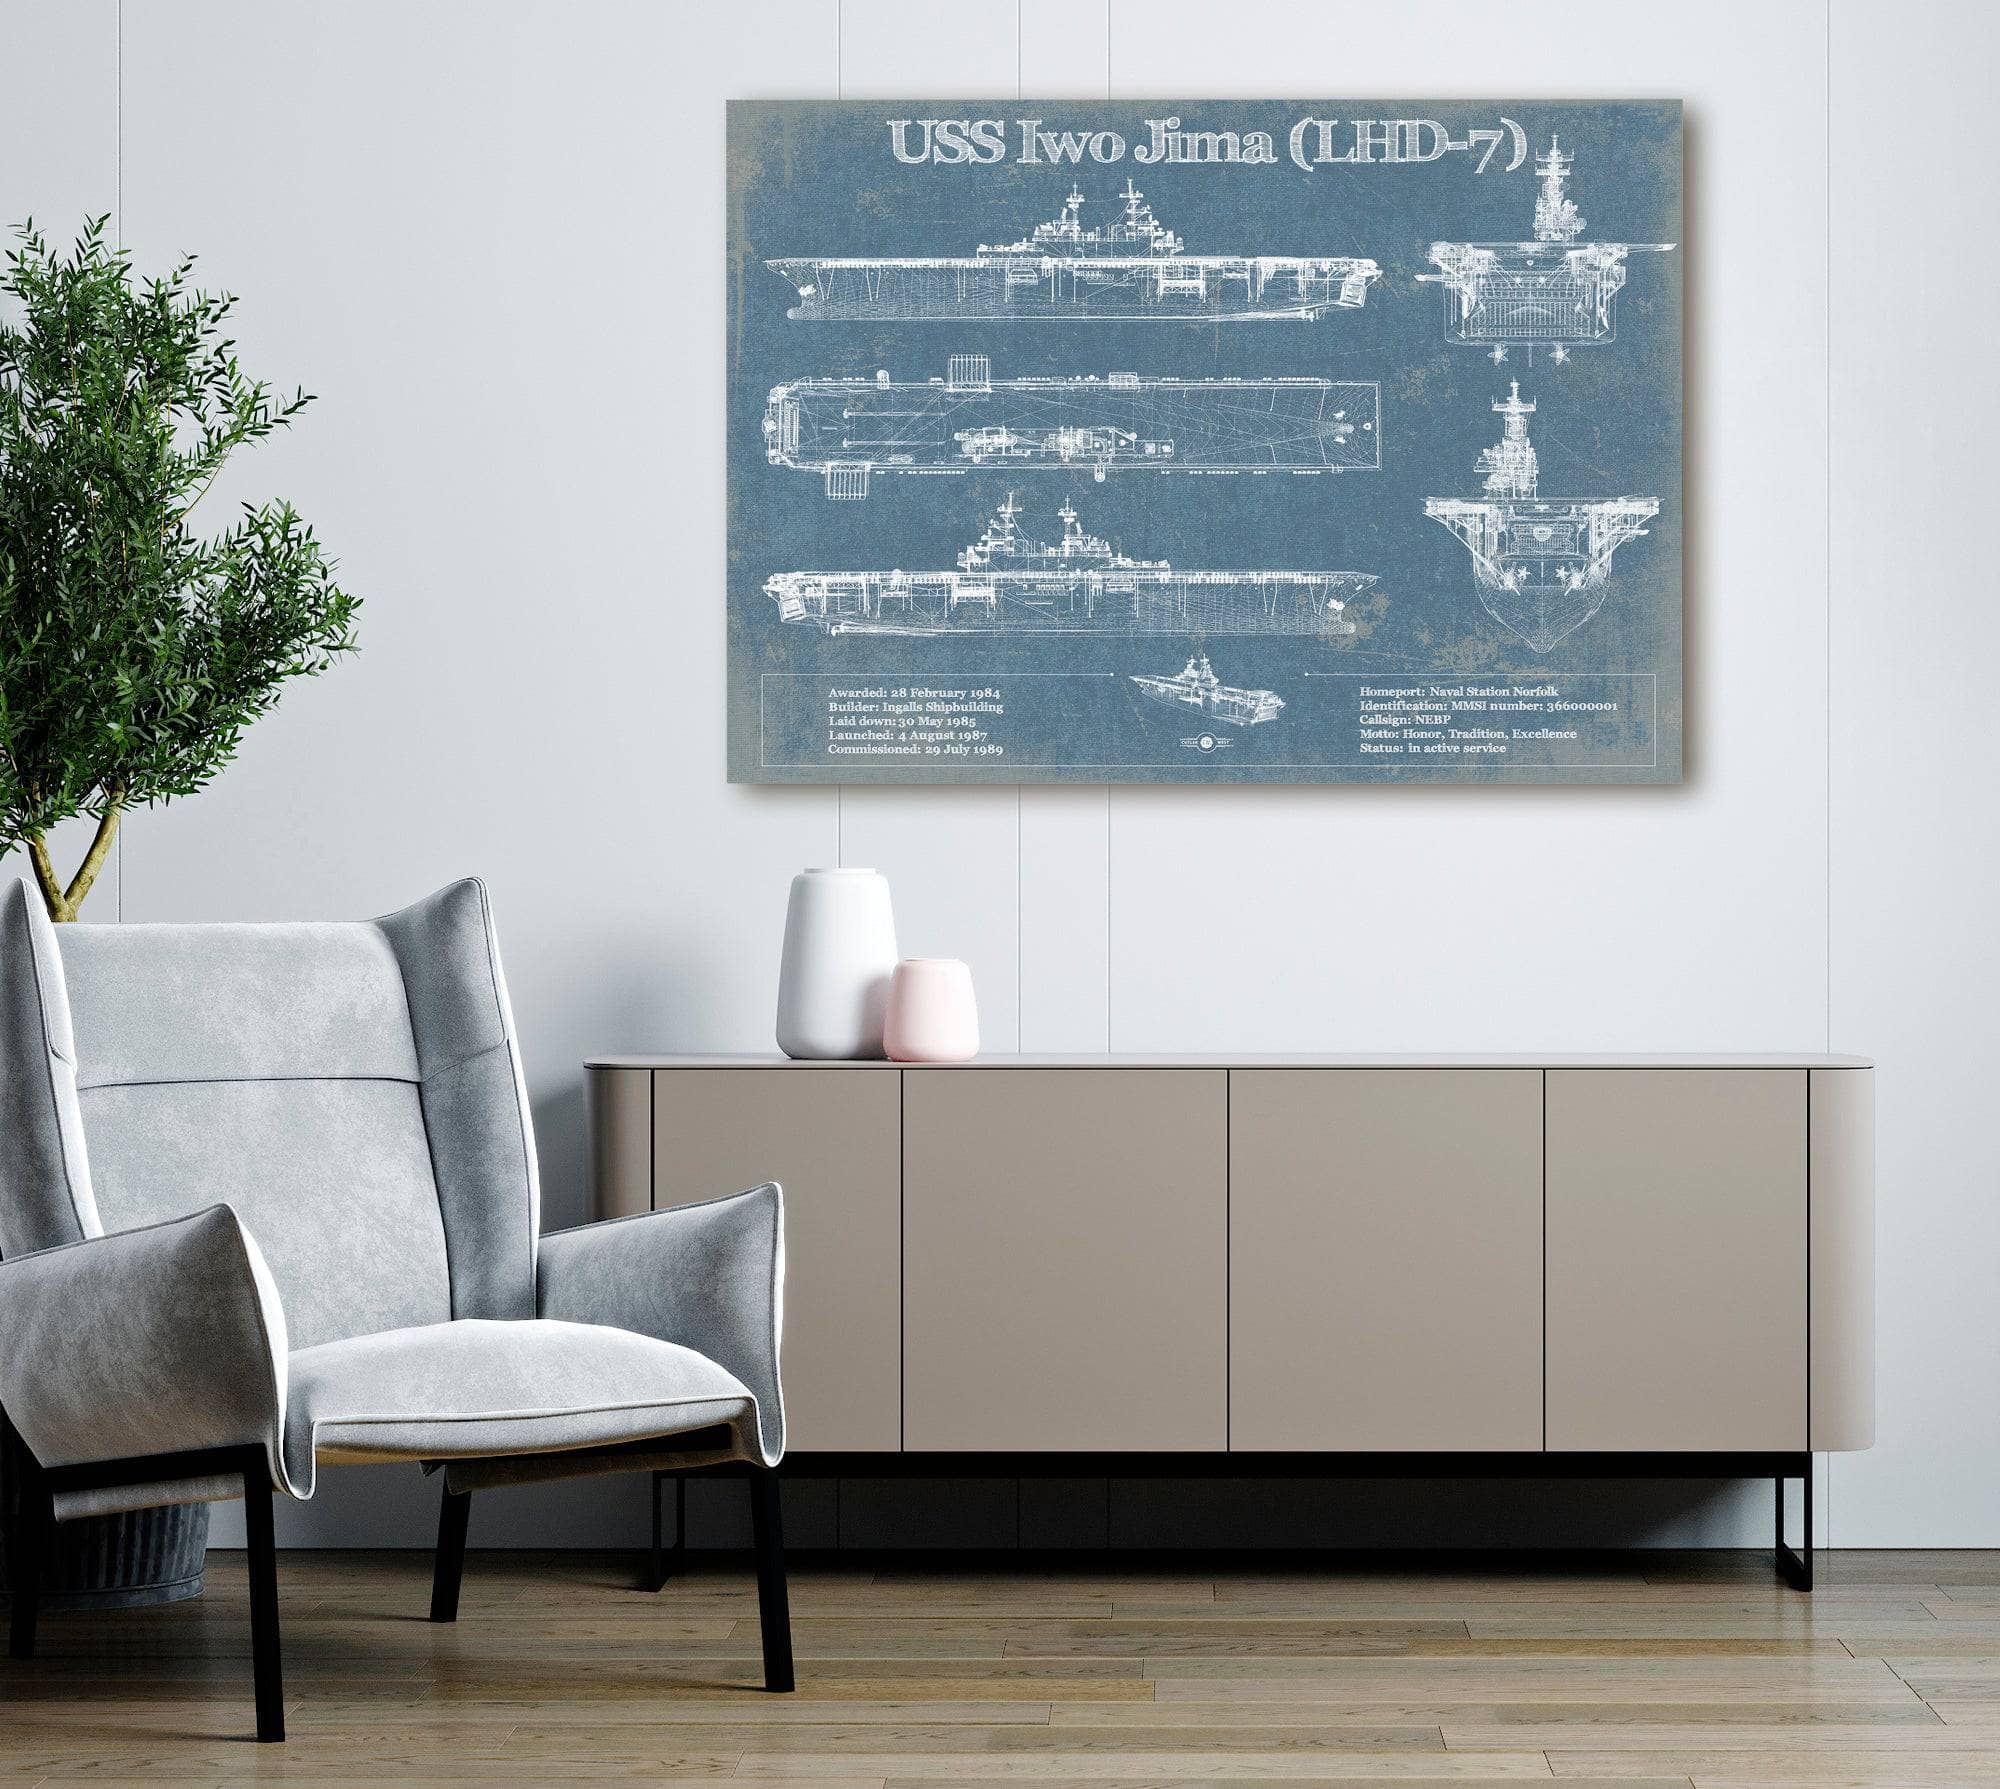 USS Iwo Jima (LHD-7) (USS Iwo Jima) Blueprint Original Military Wall Art - Customizable